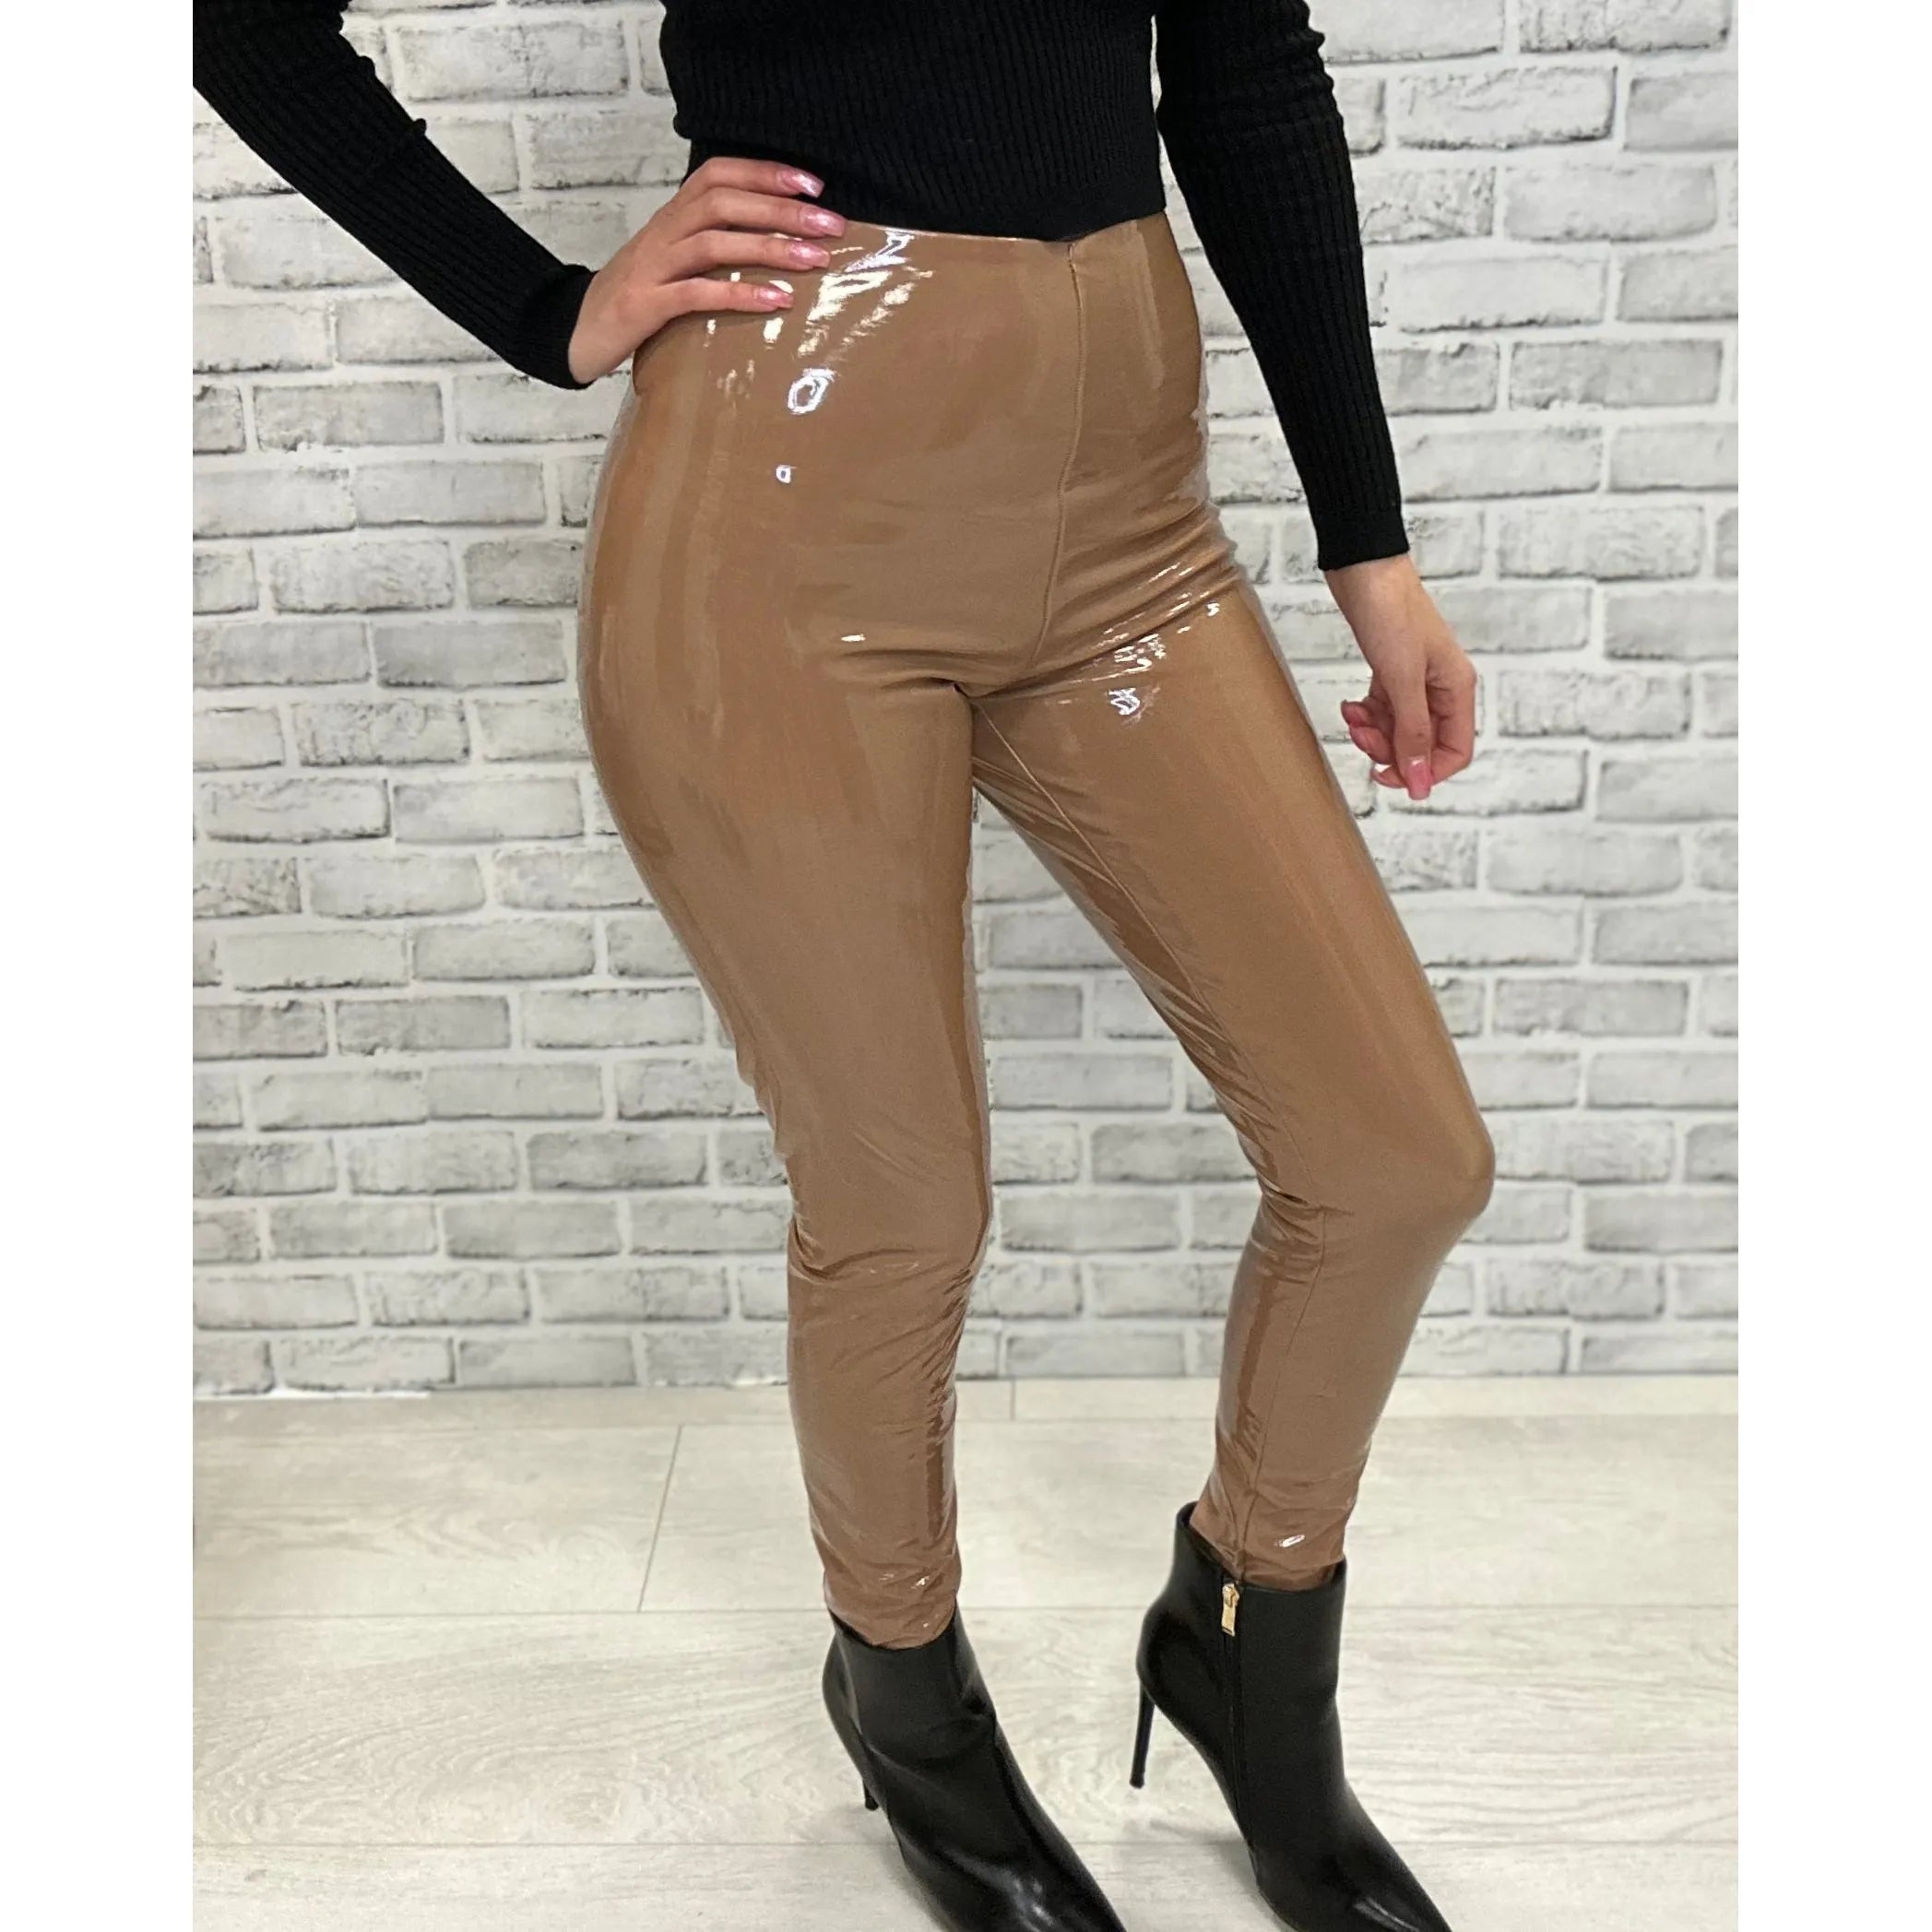 Commando Patent Leather Legging - Burgundy – Alicia DiMichele Boutique